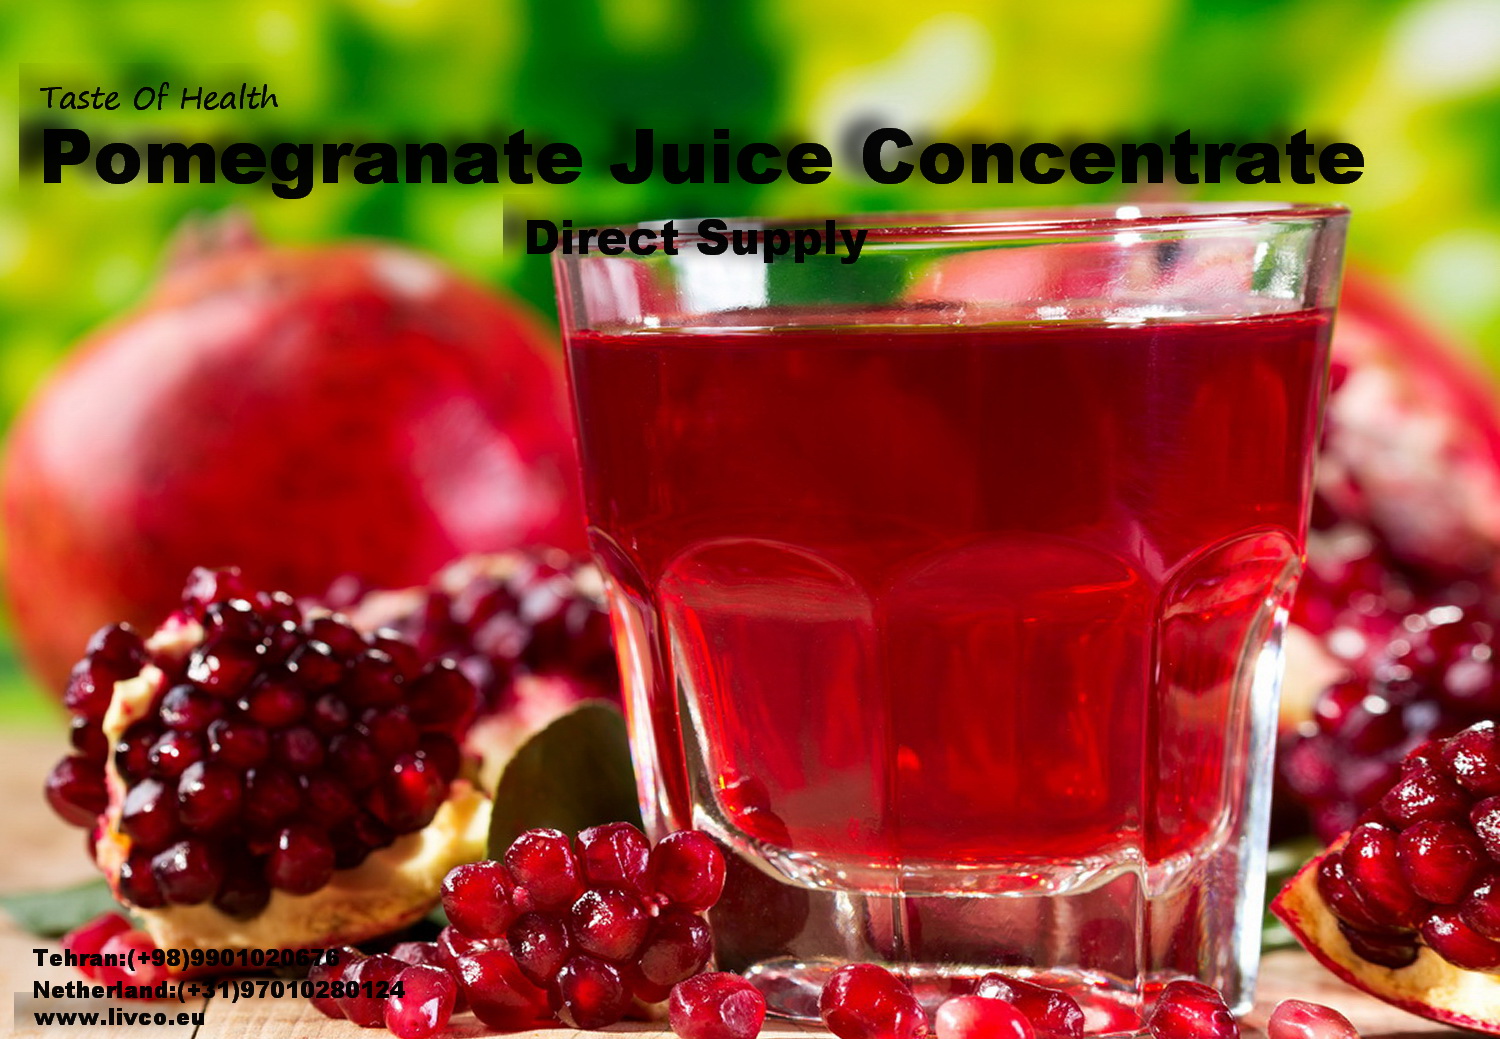 Pure Pomegranate Juice Concentrate supplier,www.livco.eu